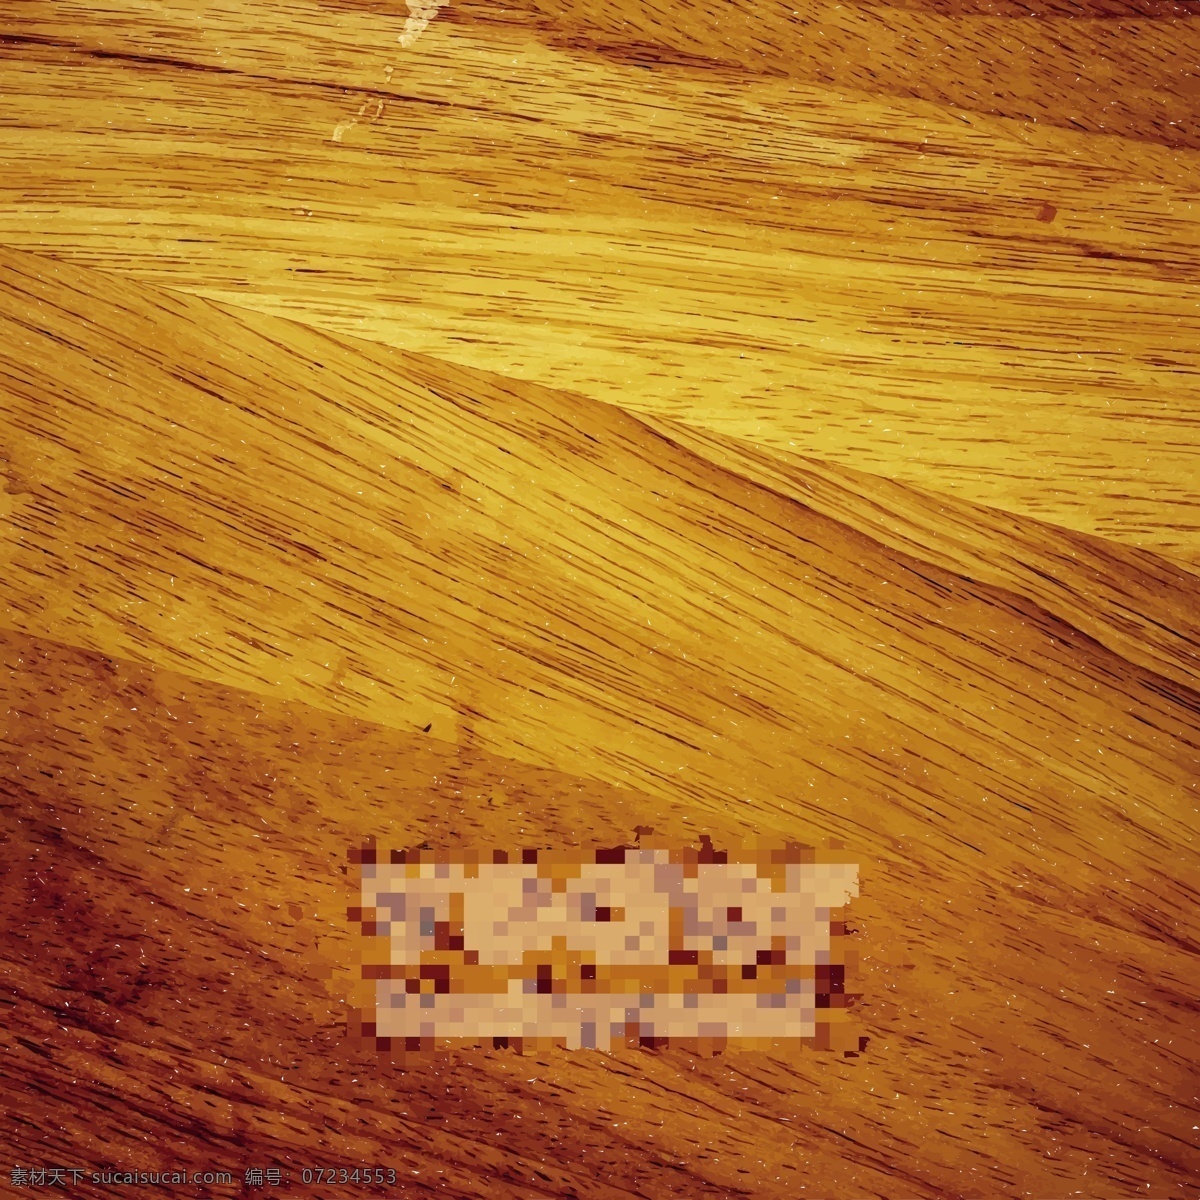 木材 纹理 背景 矢量 木板纹路 木材背景 木质纹理 棕色木纹 矢量图 其他矢量图